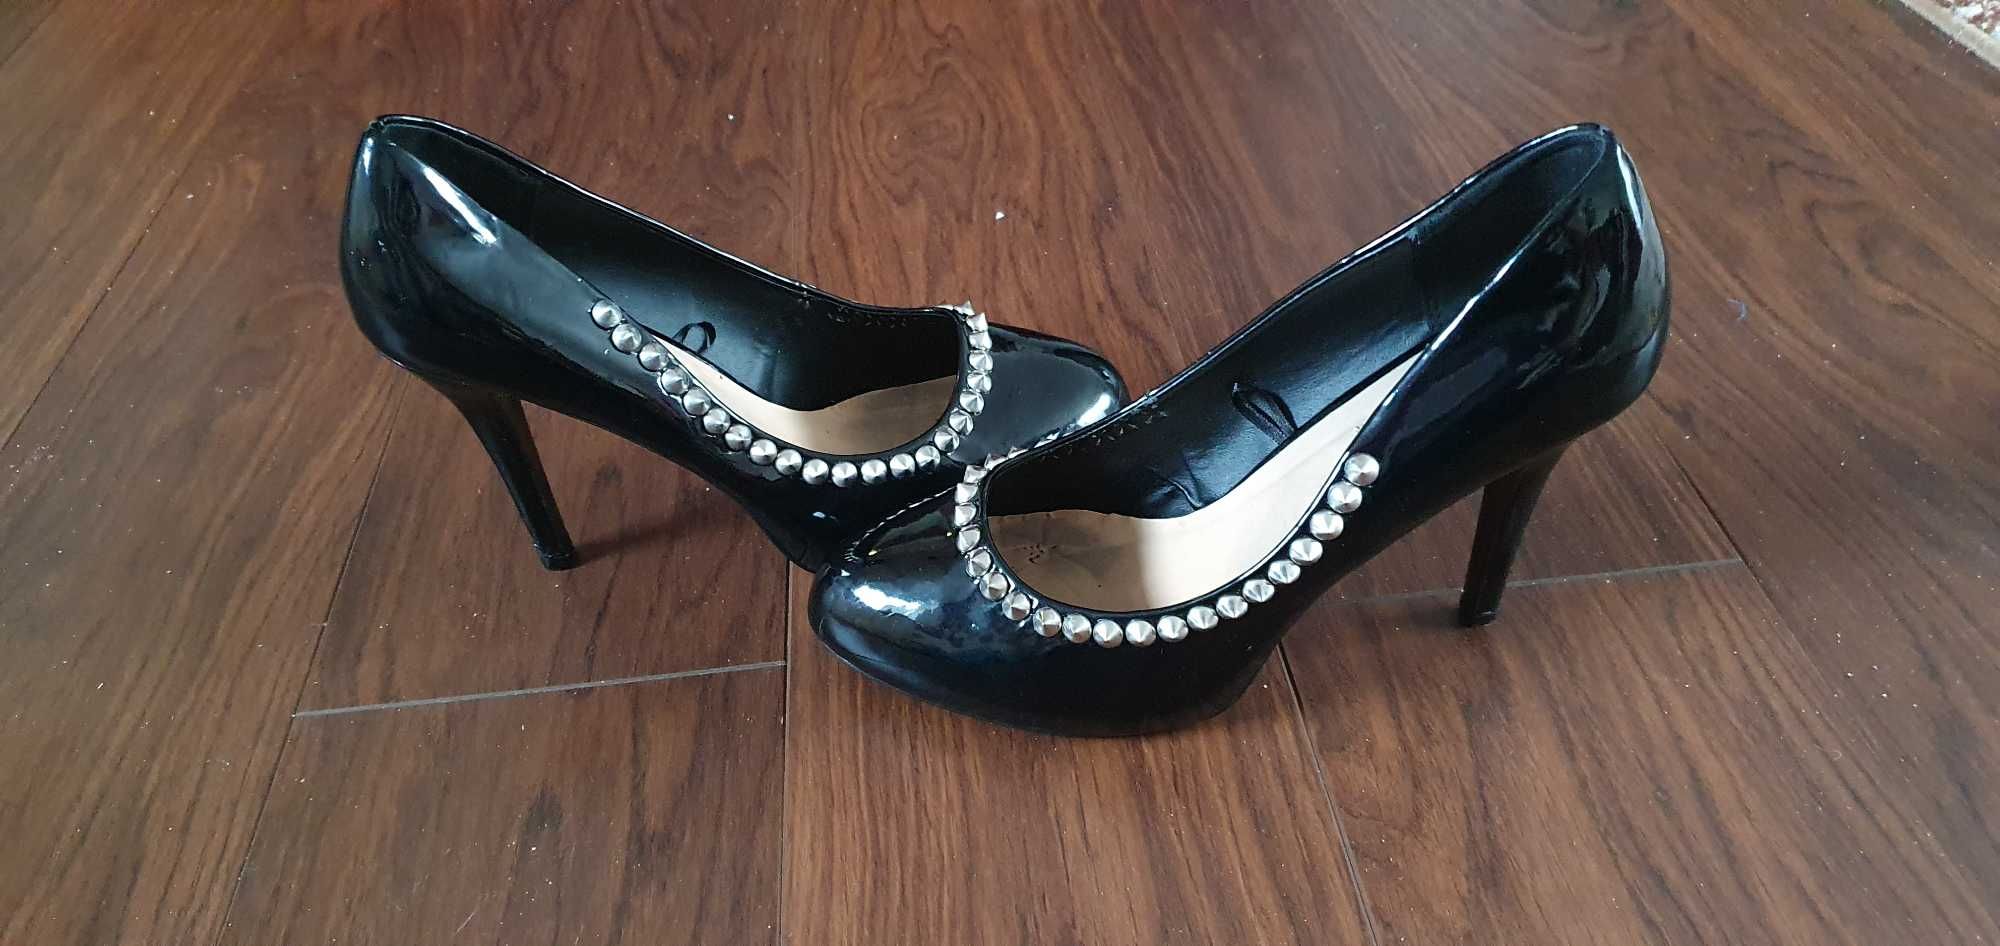 Buty czarne szpilki, (męskie lub damskie) rozmiar 43 z ćwiekmi